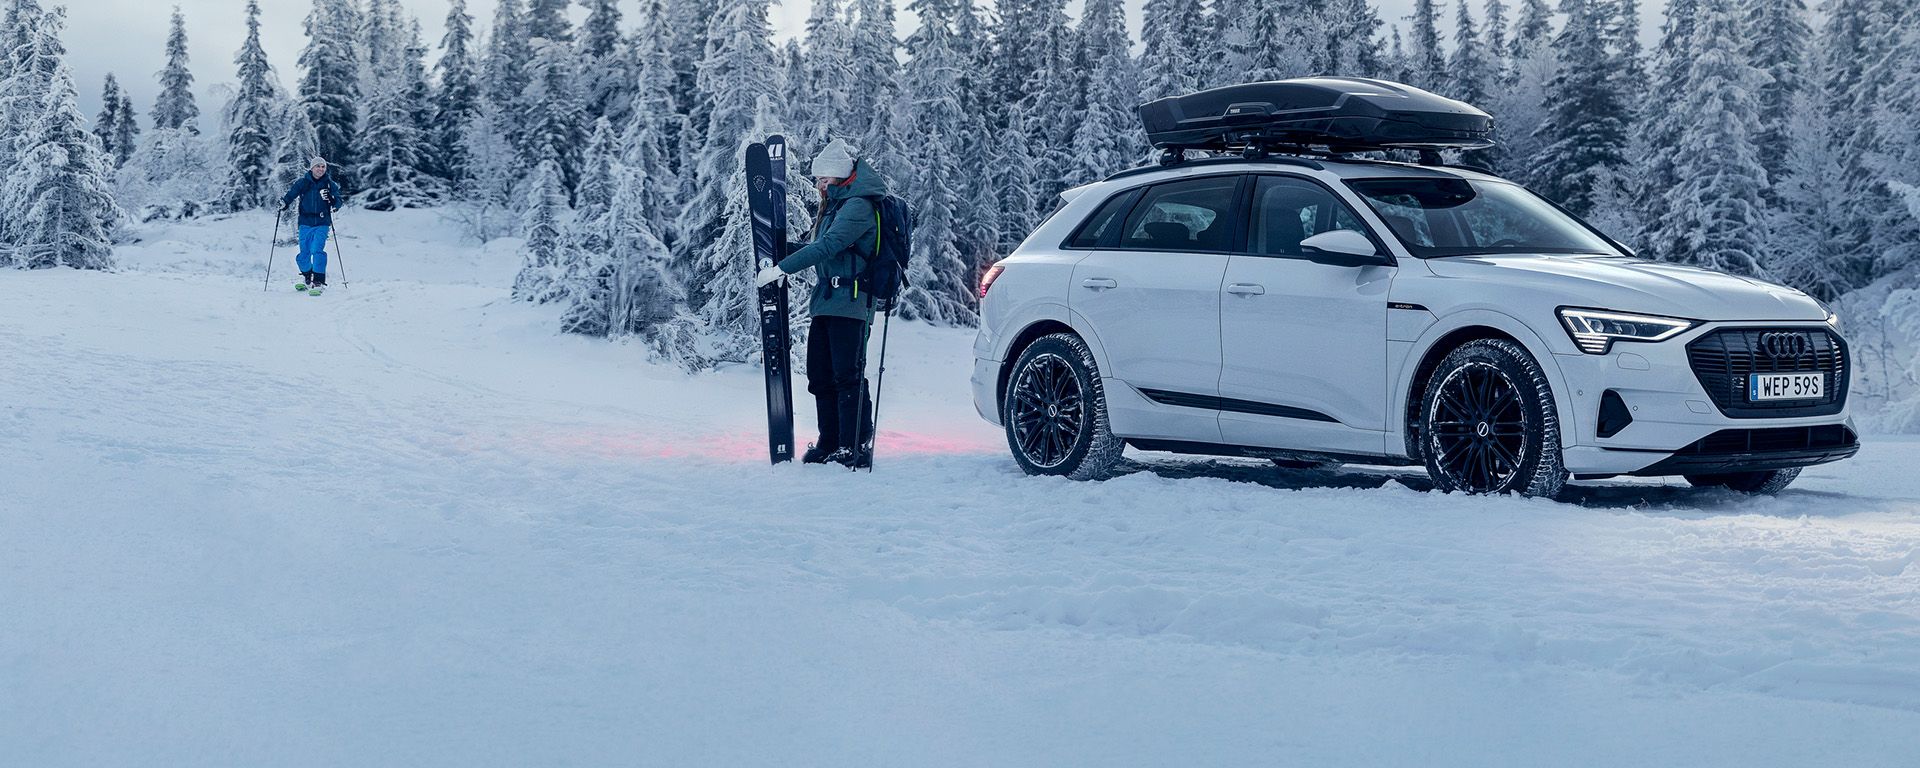 Automobil s postavljenom krovnom kutijom Thule Vector stoji parkiran pokraj šume pod snijegom, a uz njega stoje skijaši.